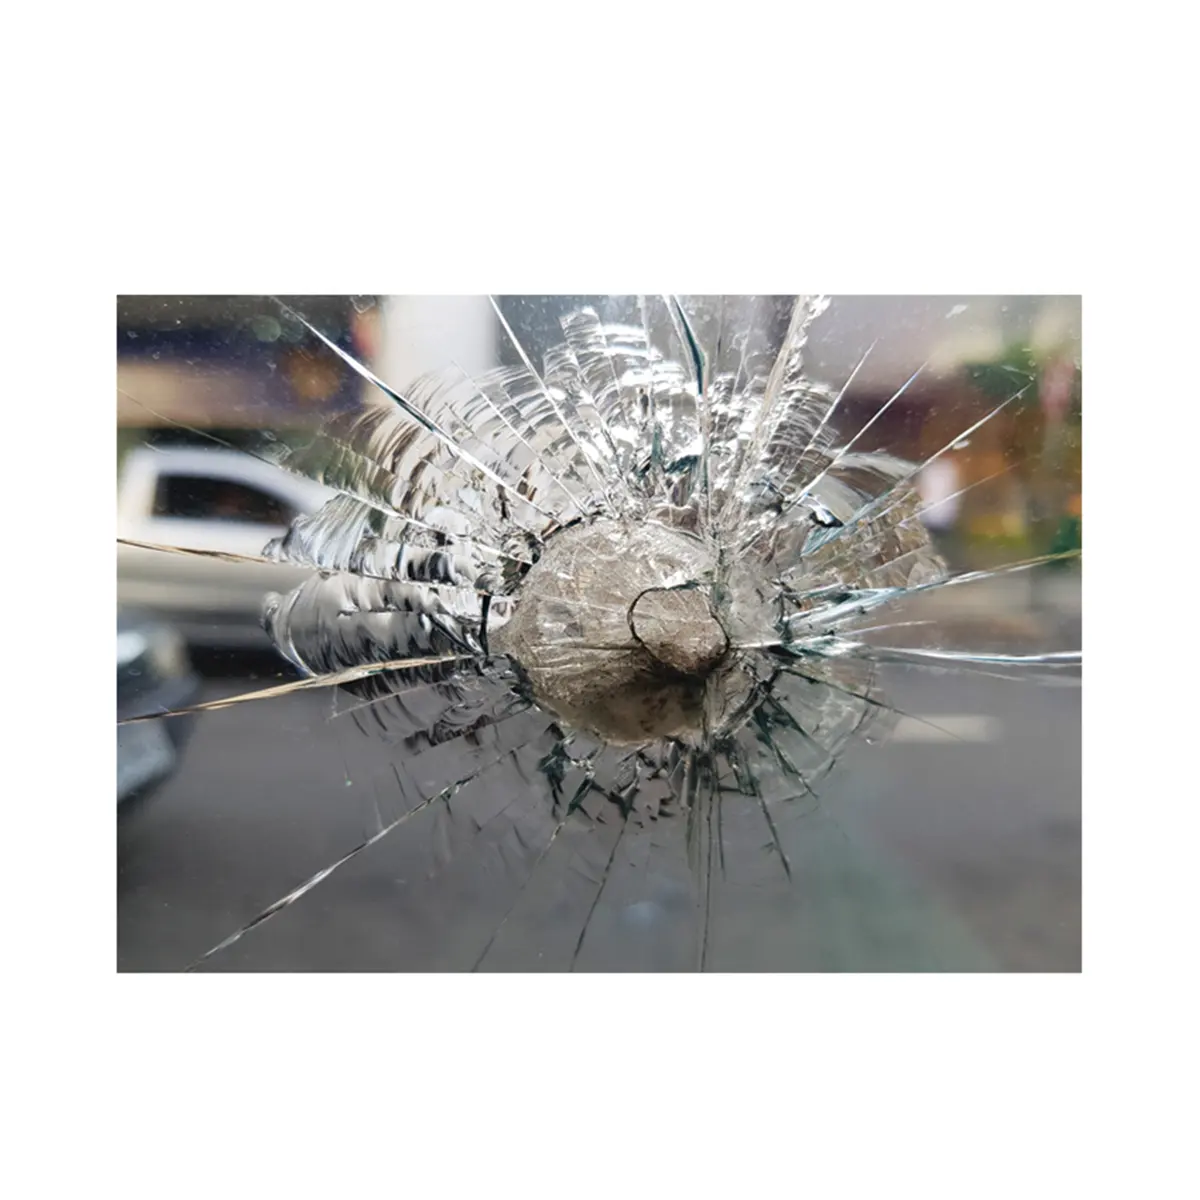 Vidrio resistente a balas Protección inquebrantable en situaciones de alto riesgo con vidrio resistente a balas impenetrable